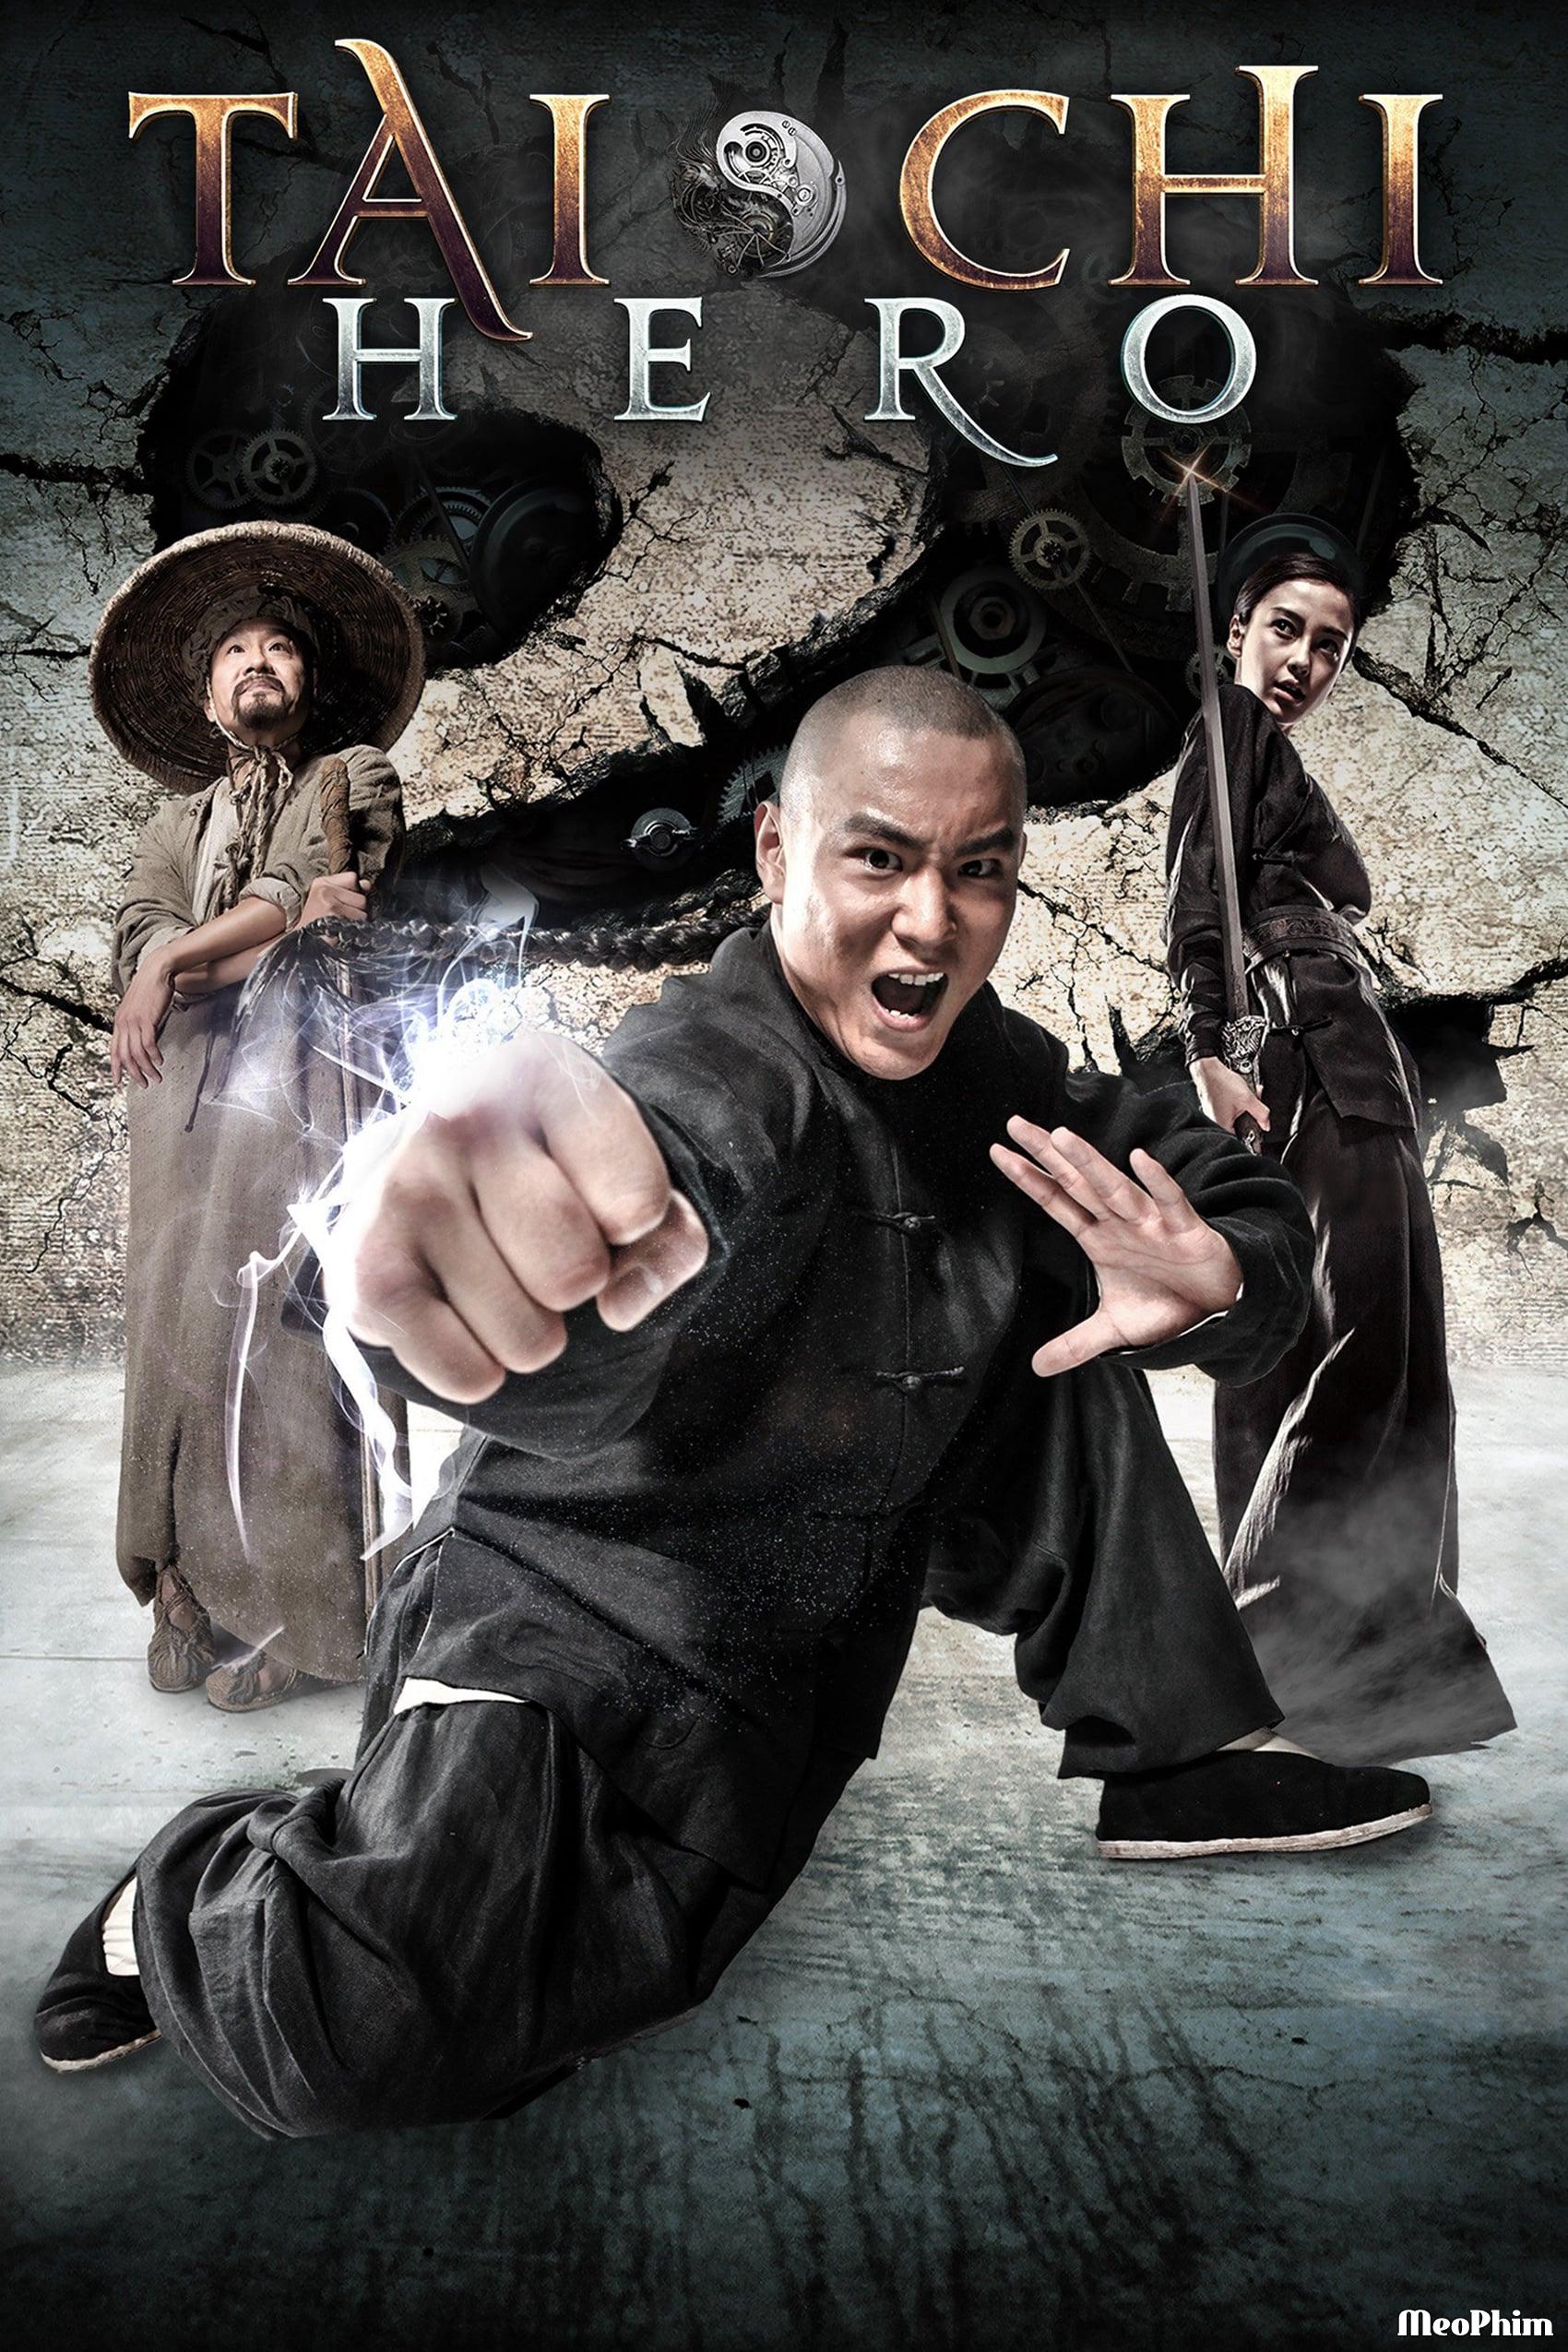 Thái Cực Quyền 2: Anh Hùng Bá Đạo - Tai Chi Hero (2012)